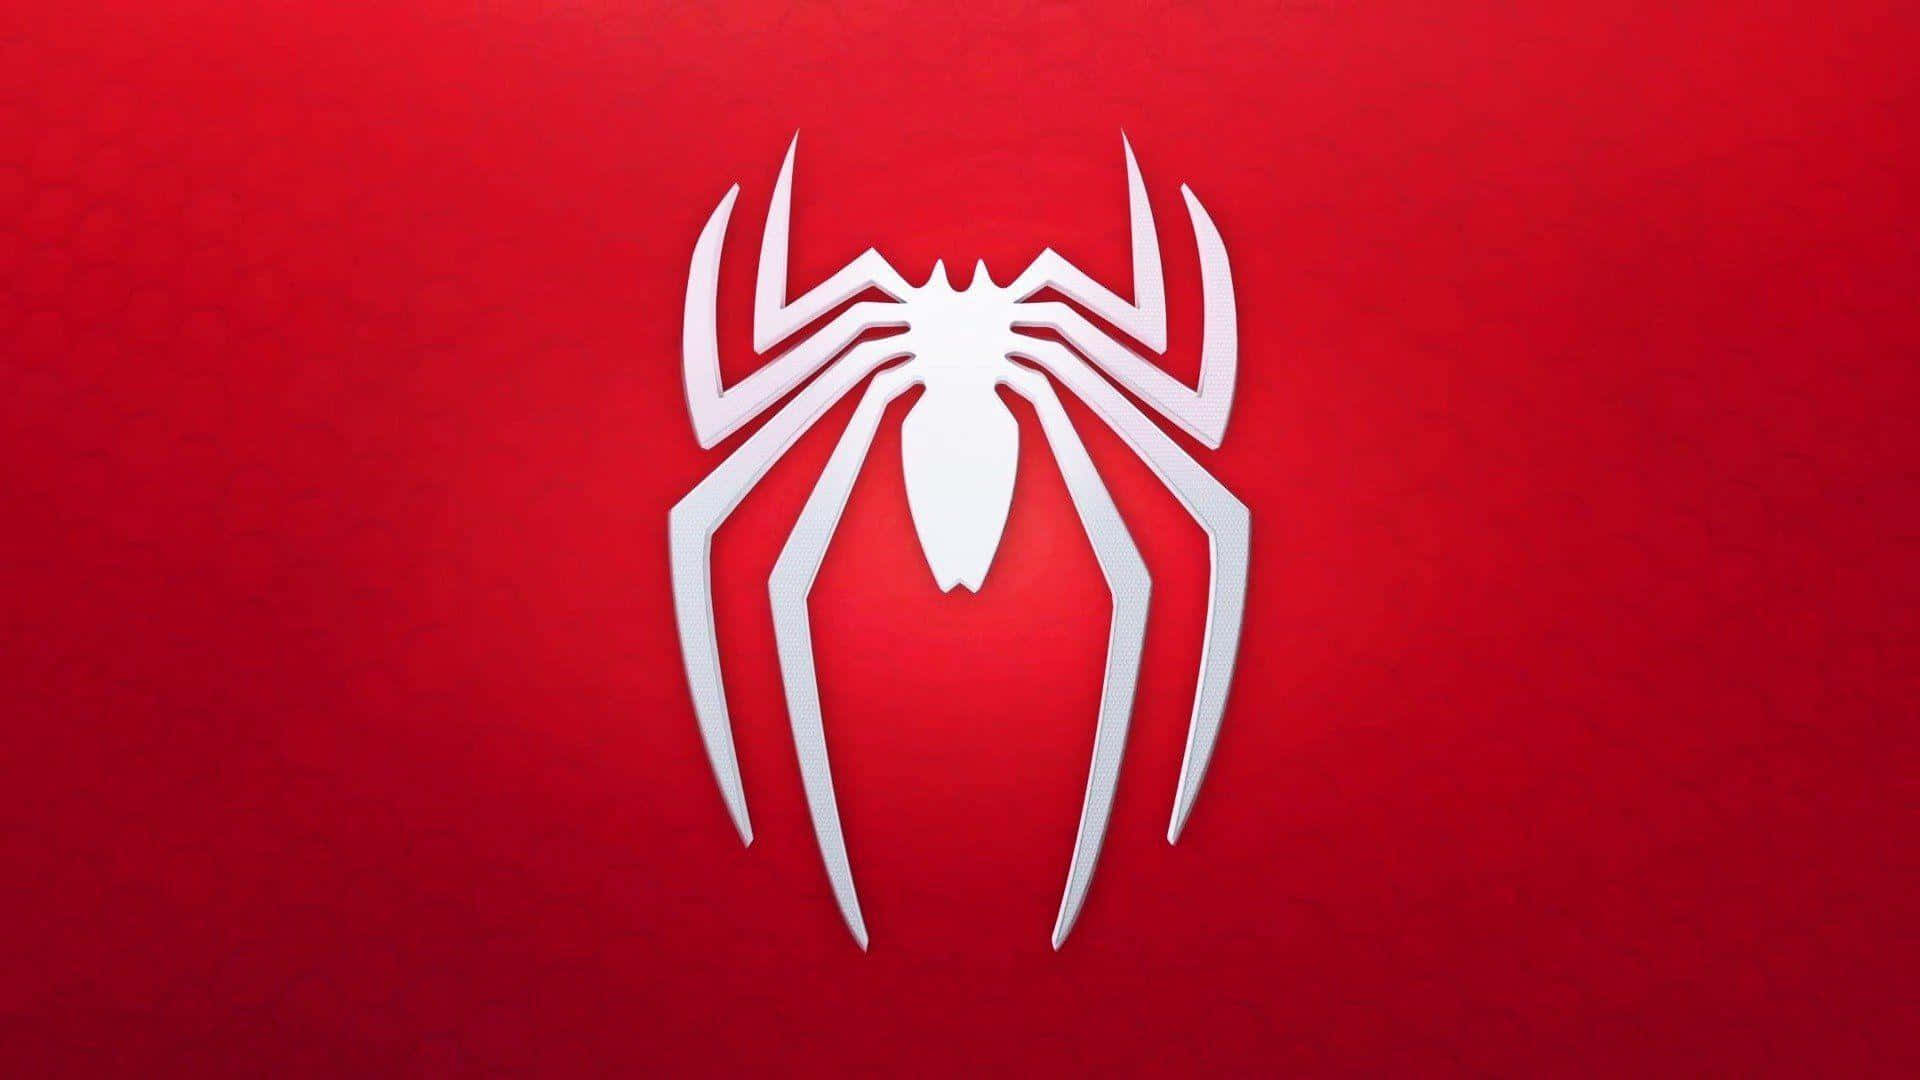 Spider Man Ps4 4k White Spider Logo Red Background Wallpaper